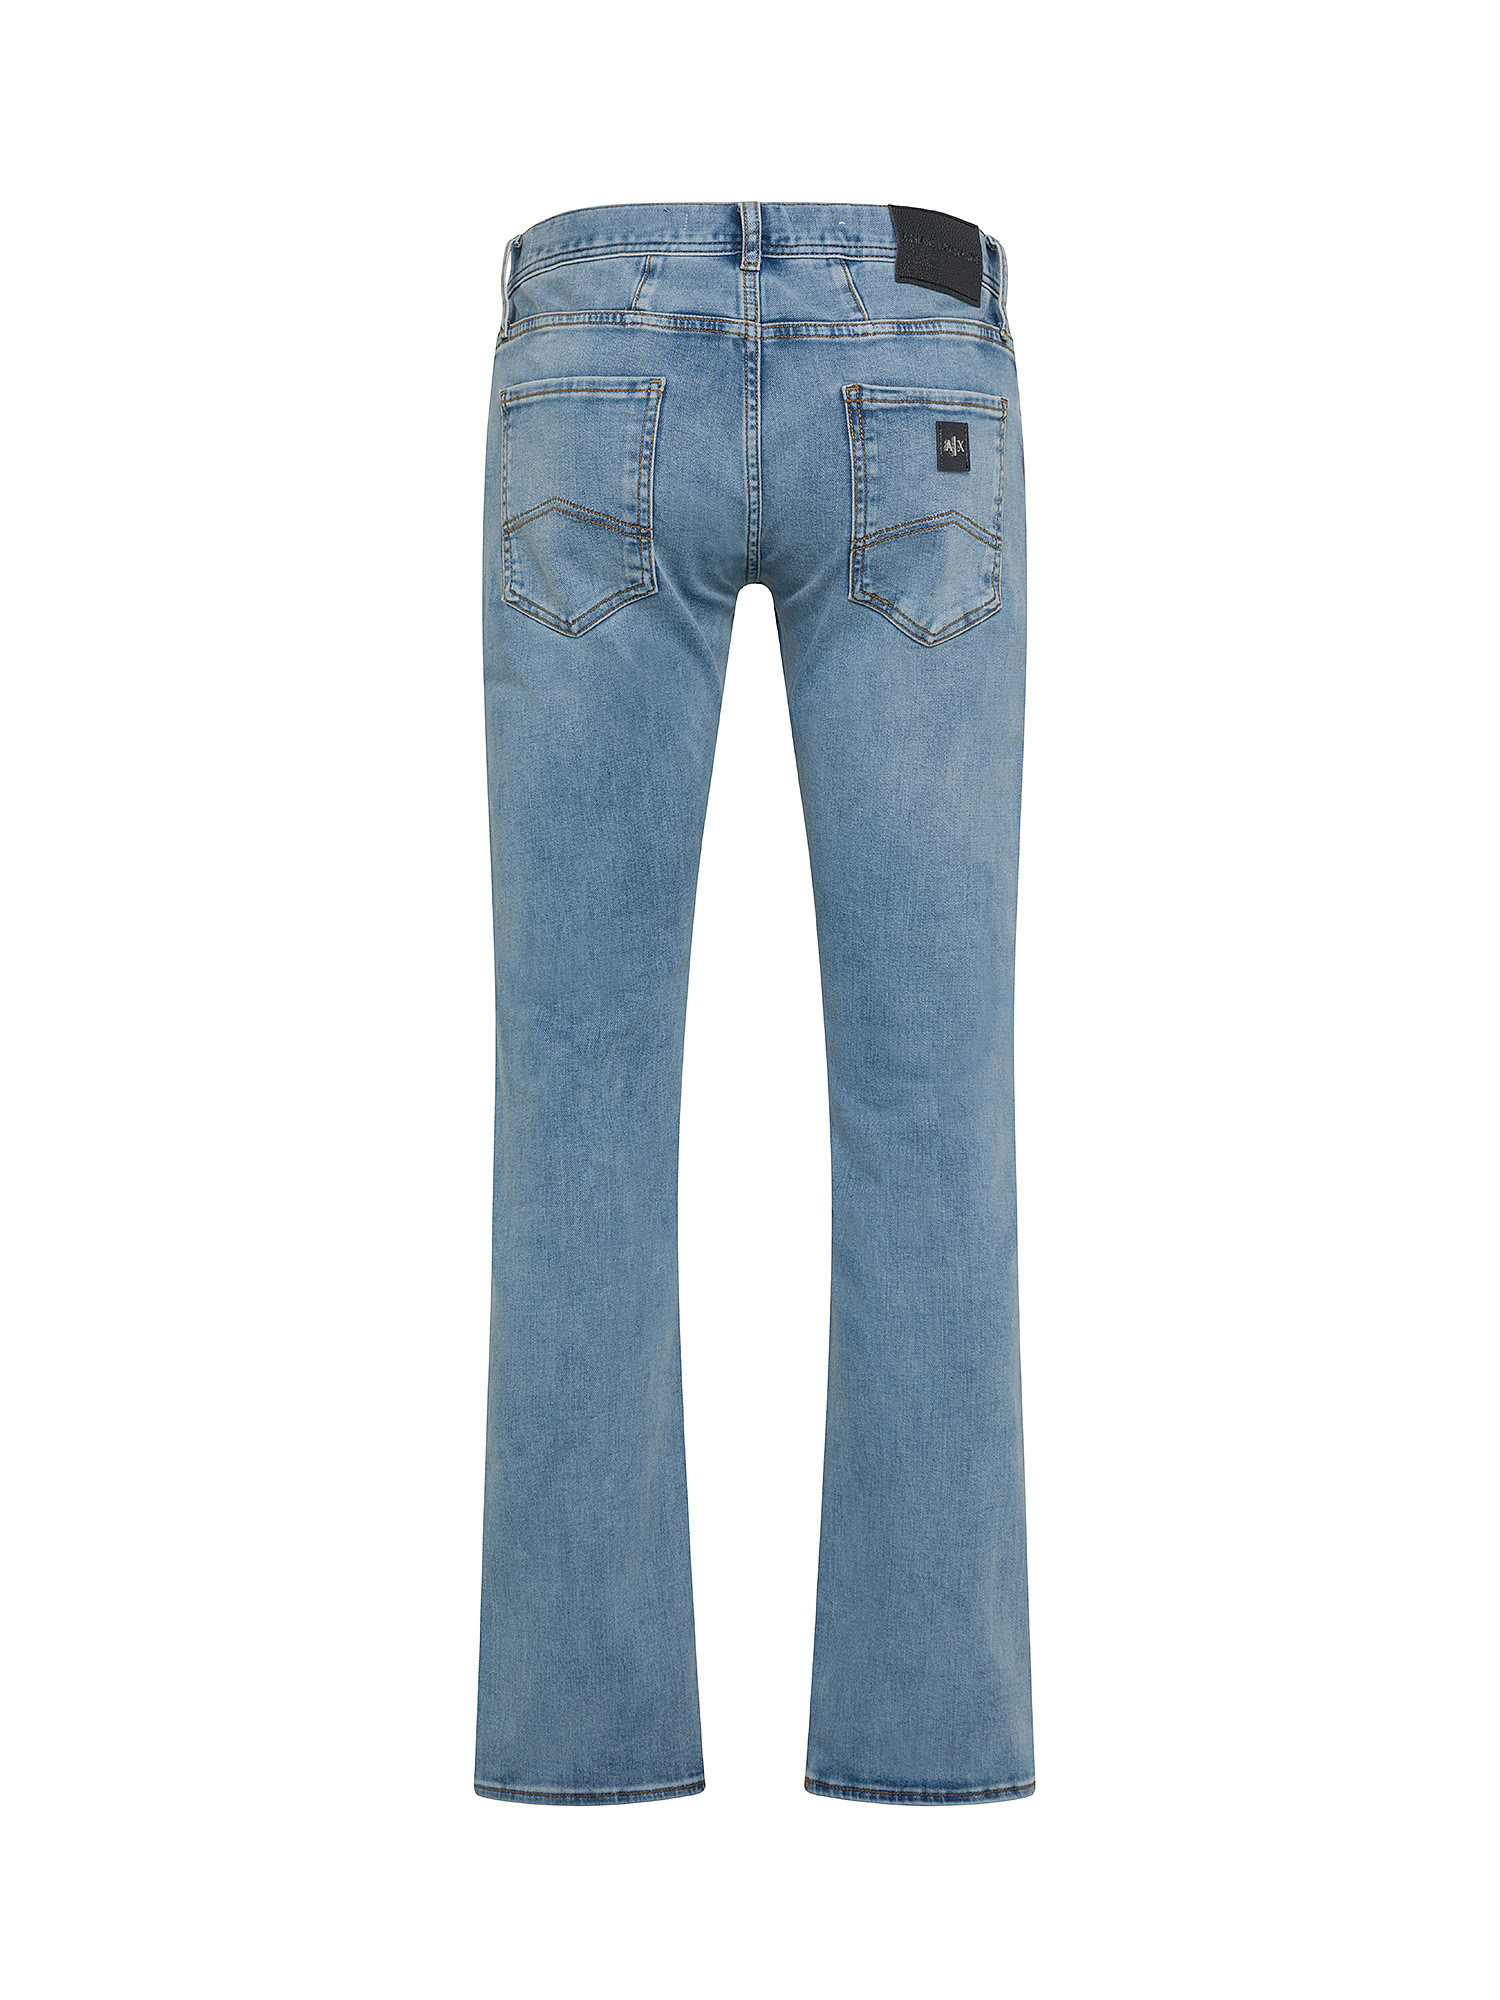 Armani Exchange - Five pocket slim fit jeans, Denim, large image number 1